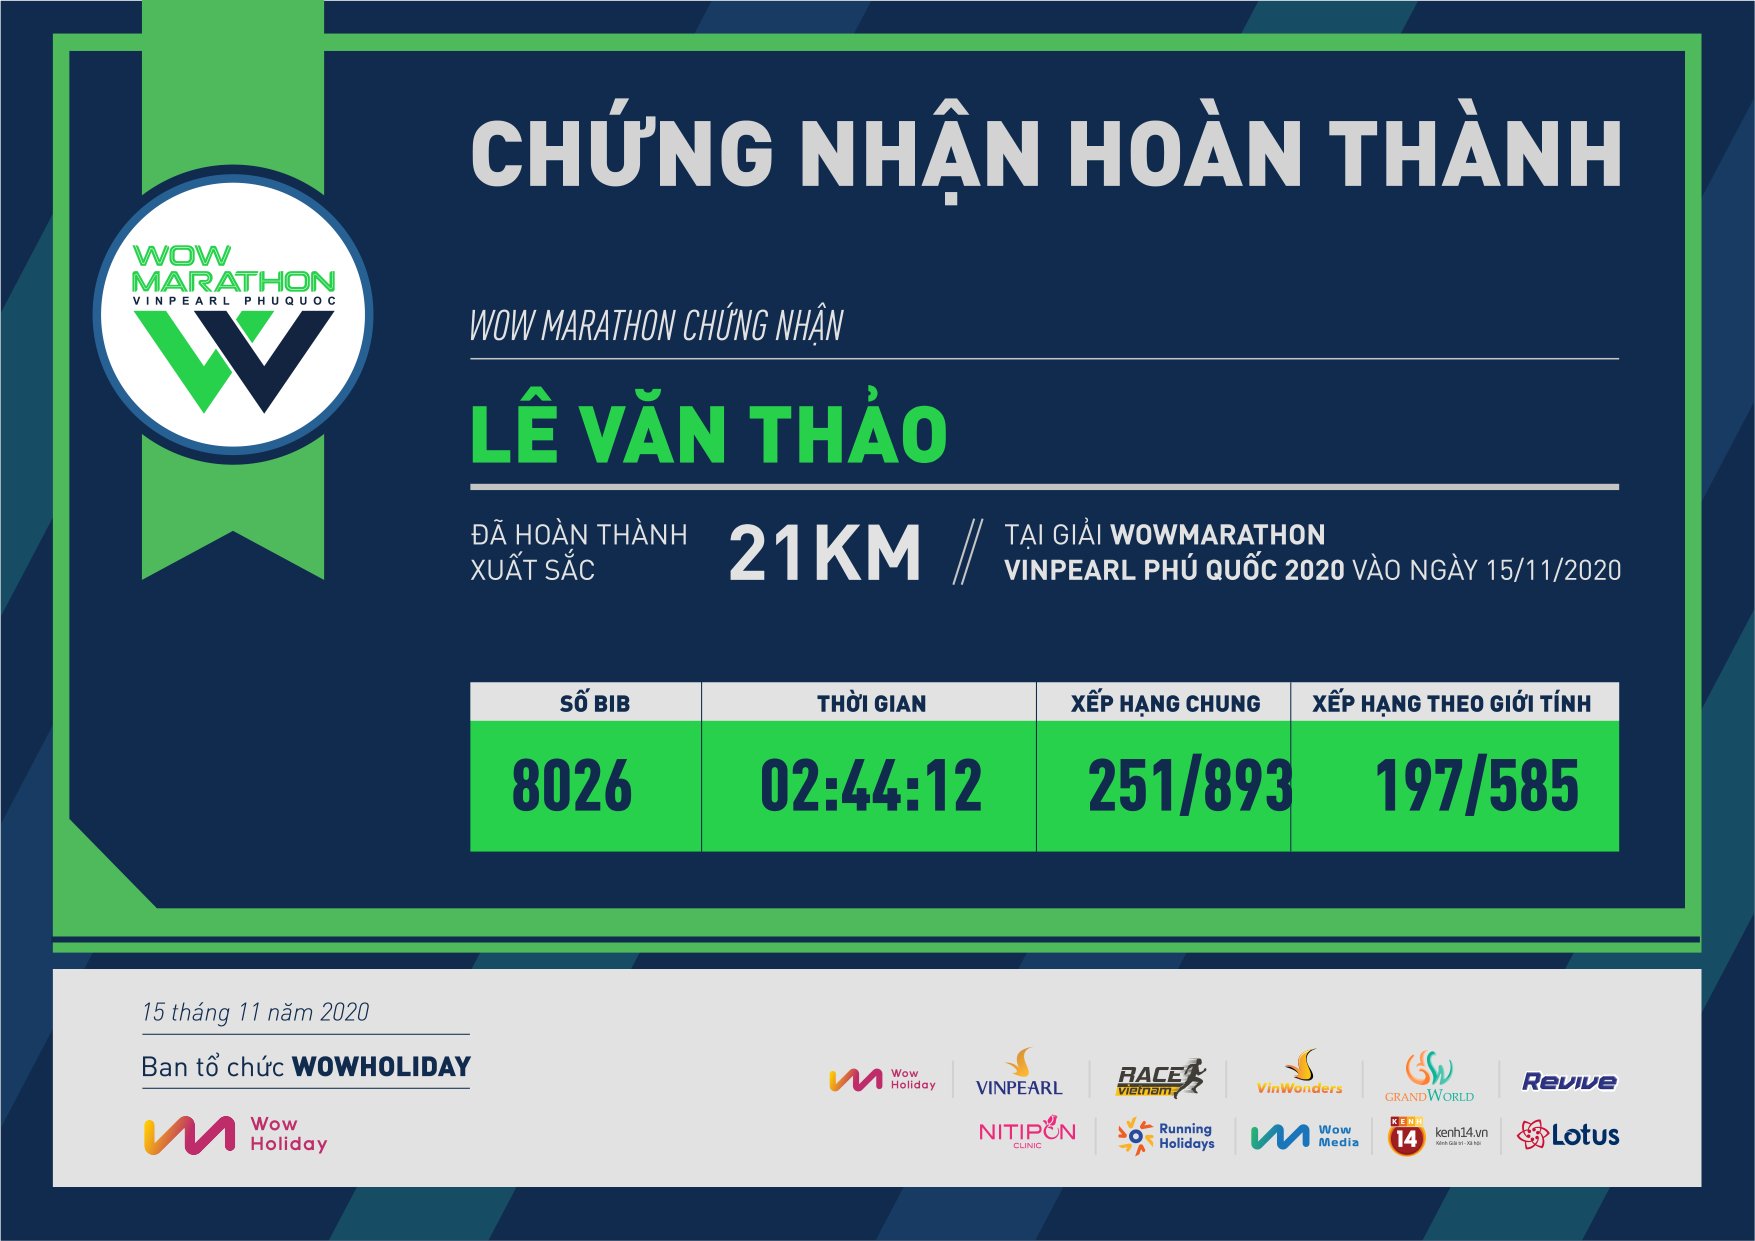 8026 - Lê Văn Thảo